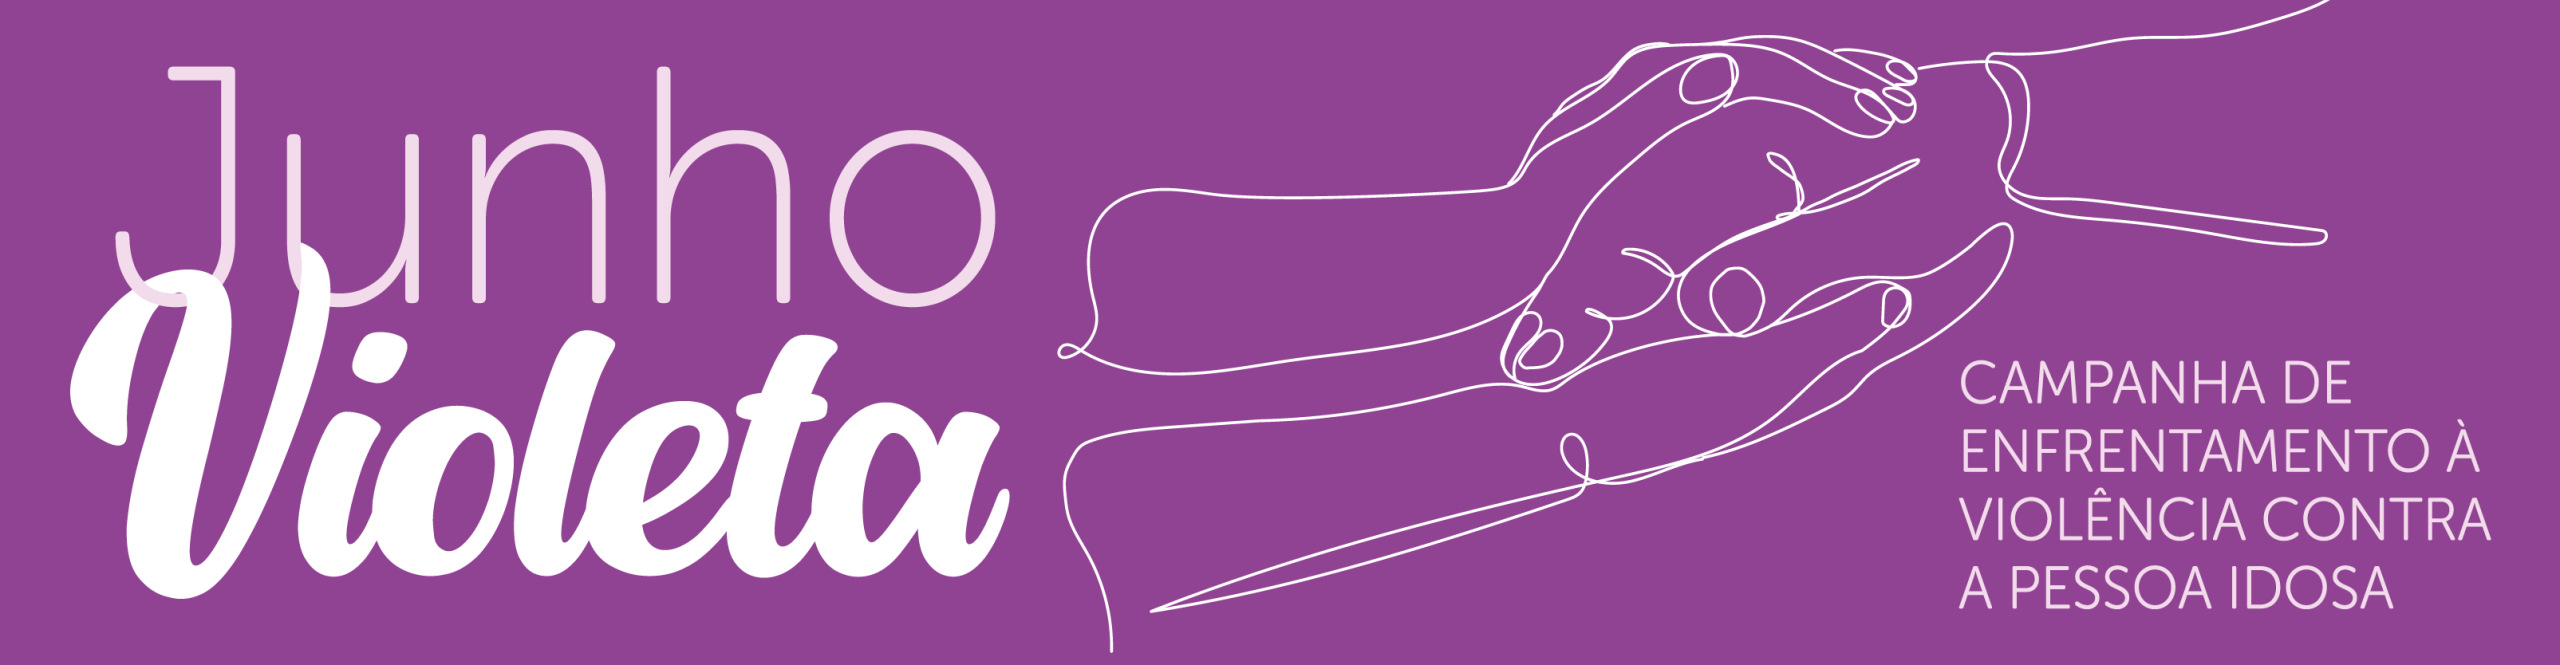 Imagem gráfica com fundo violeta e os dizeres em branco Junho Violeta Campanha de Enfrentamento a Violência contra a Pessoa Idosa, no centro uma imagem em linhas de duas mãos acolhendo uma mão de uma pessoa idosa.